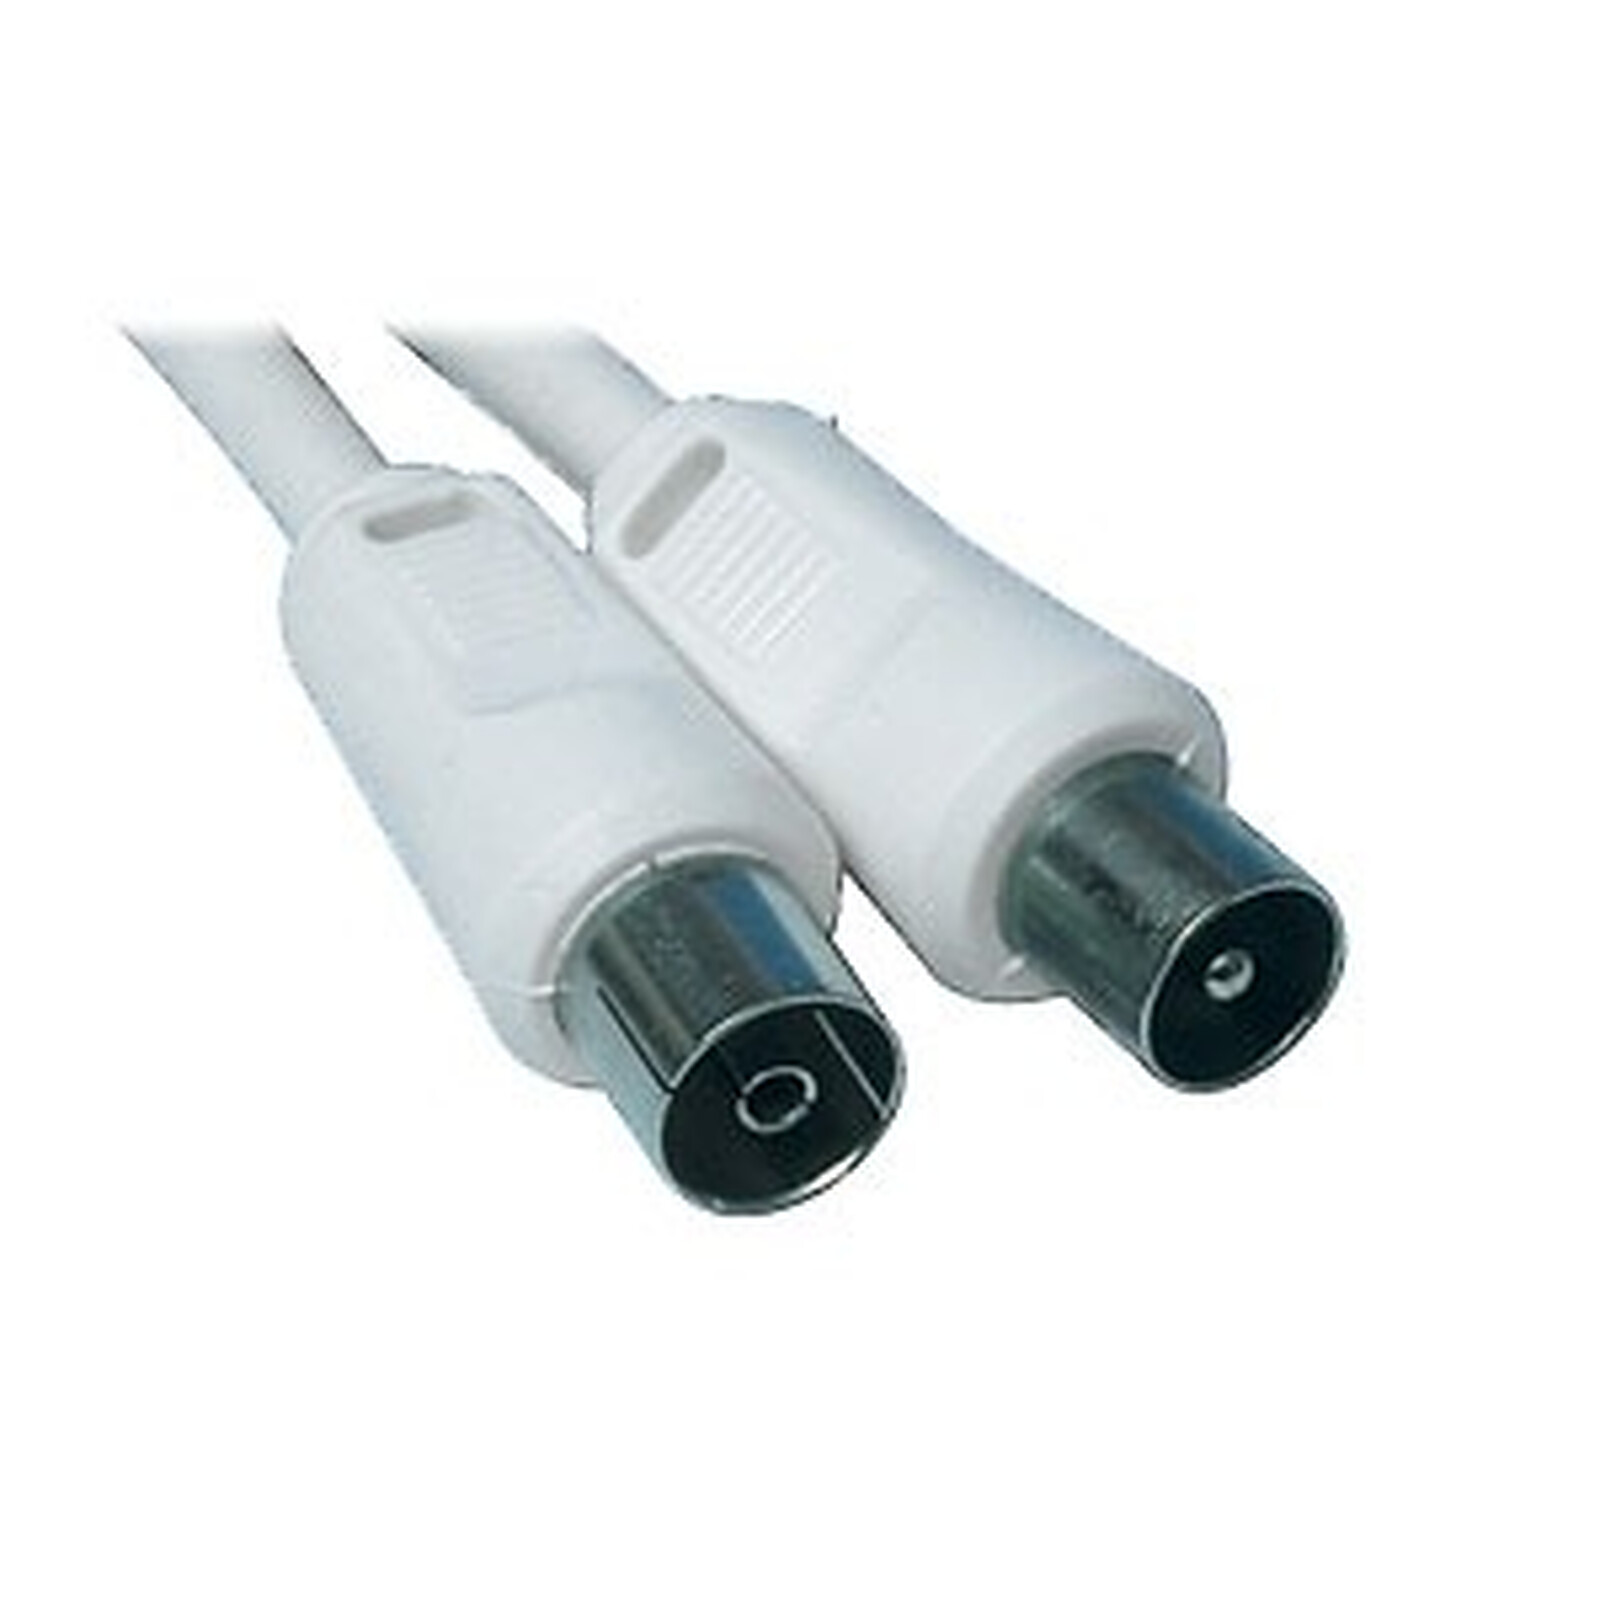 Dispuesto escaldadura Contador Cable coaxial macho/hembra para antena de TV (2,5 metros) - Cable de antena  de TV Genérica en LDLC